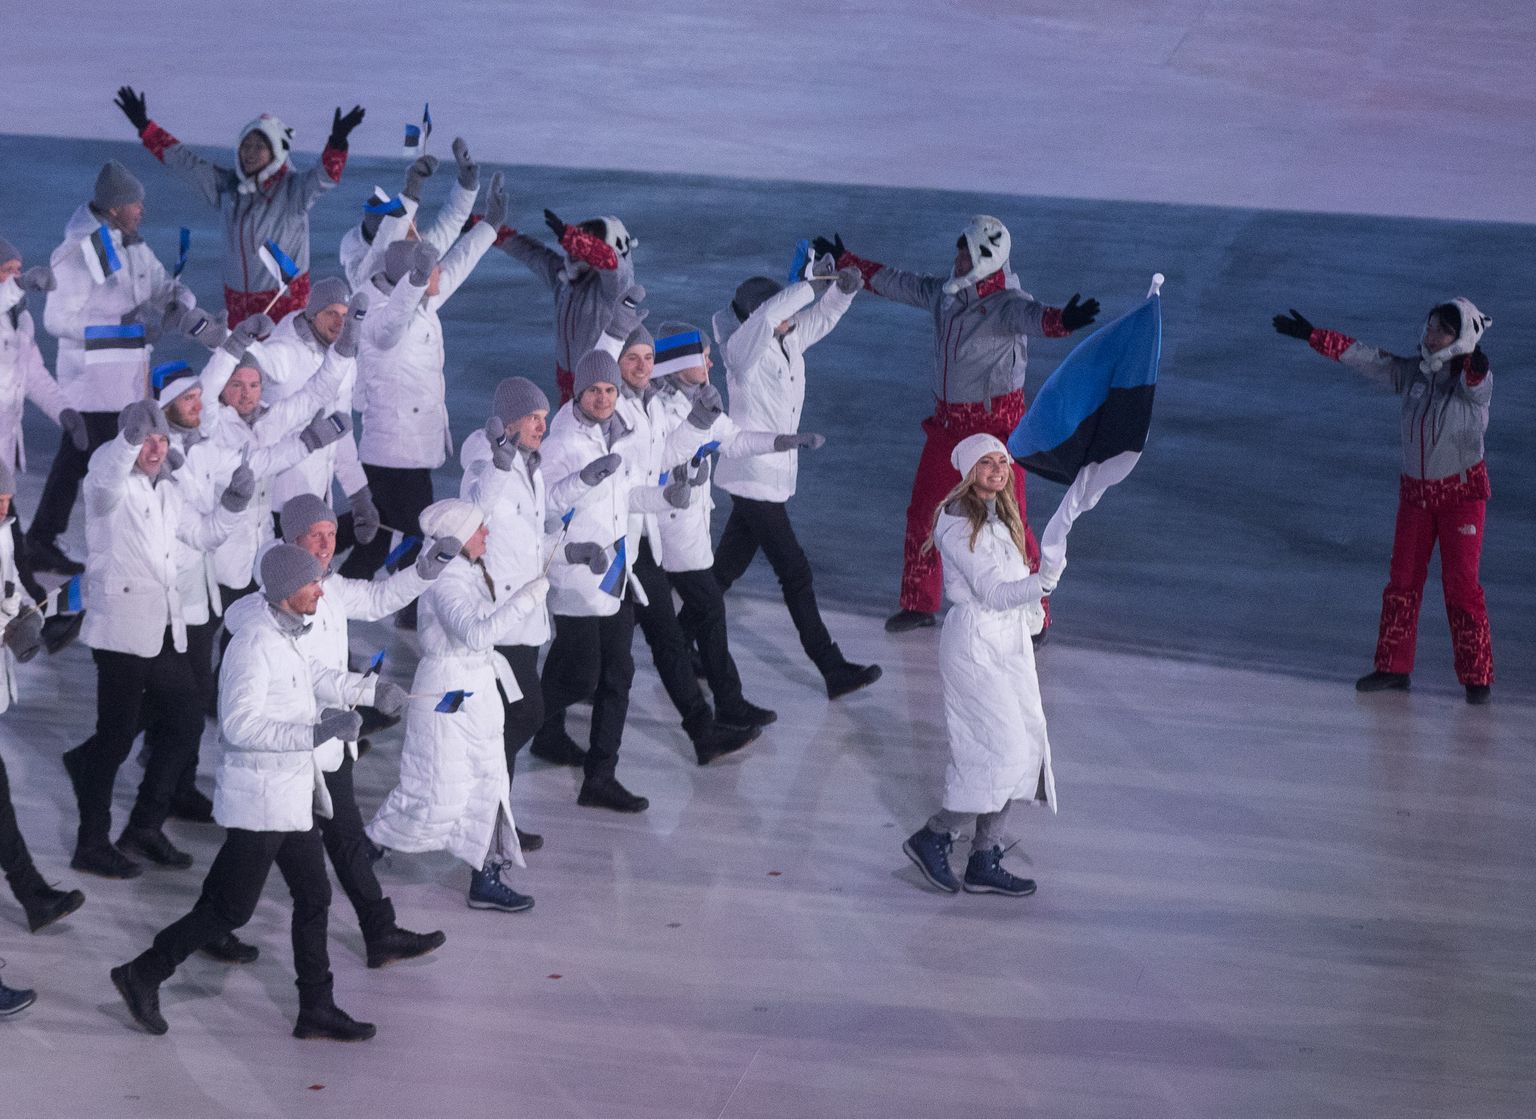 Eesti sportlasdelegatsioon Pyeongchangi olümpia avatseremoonial.